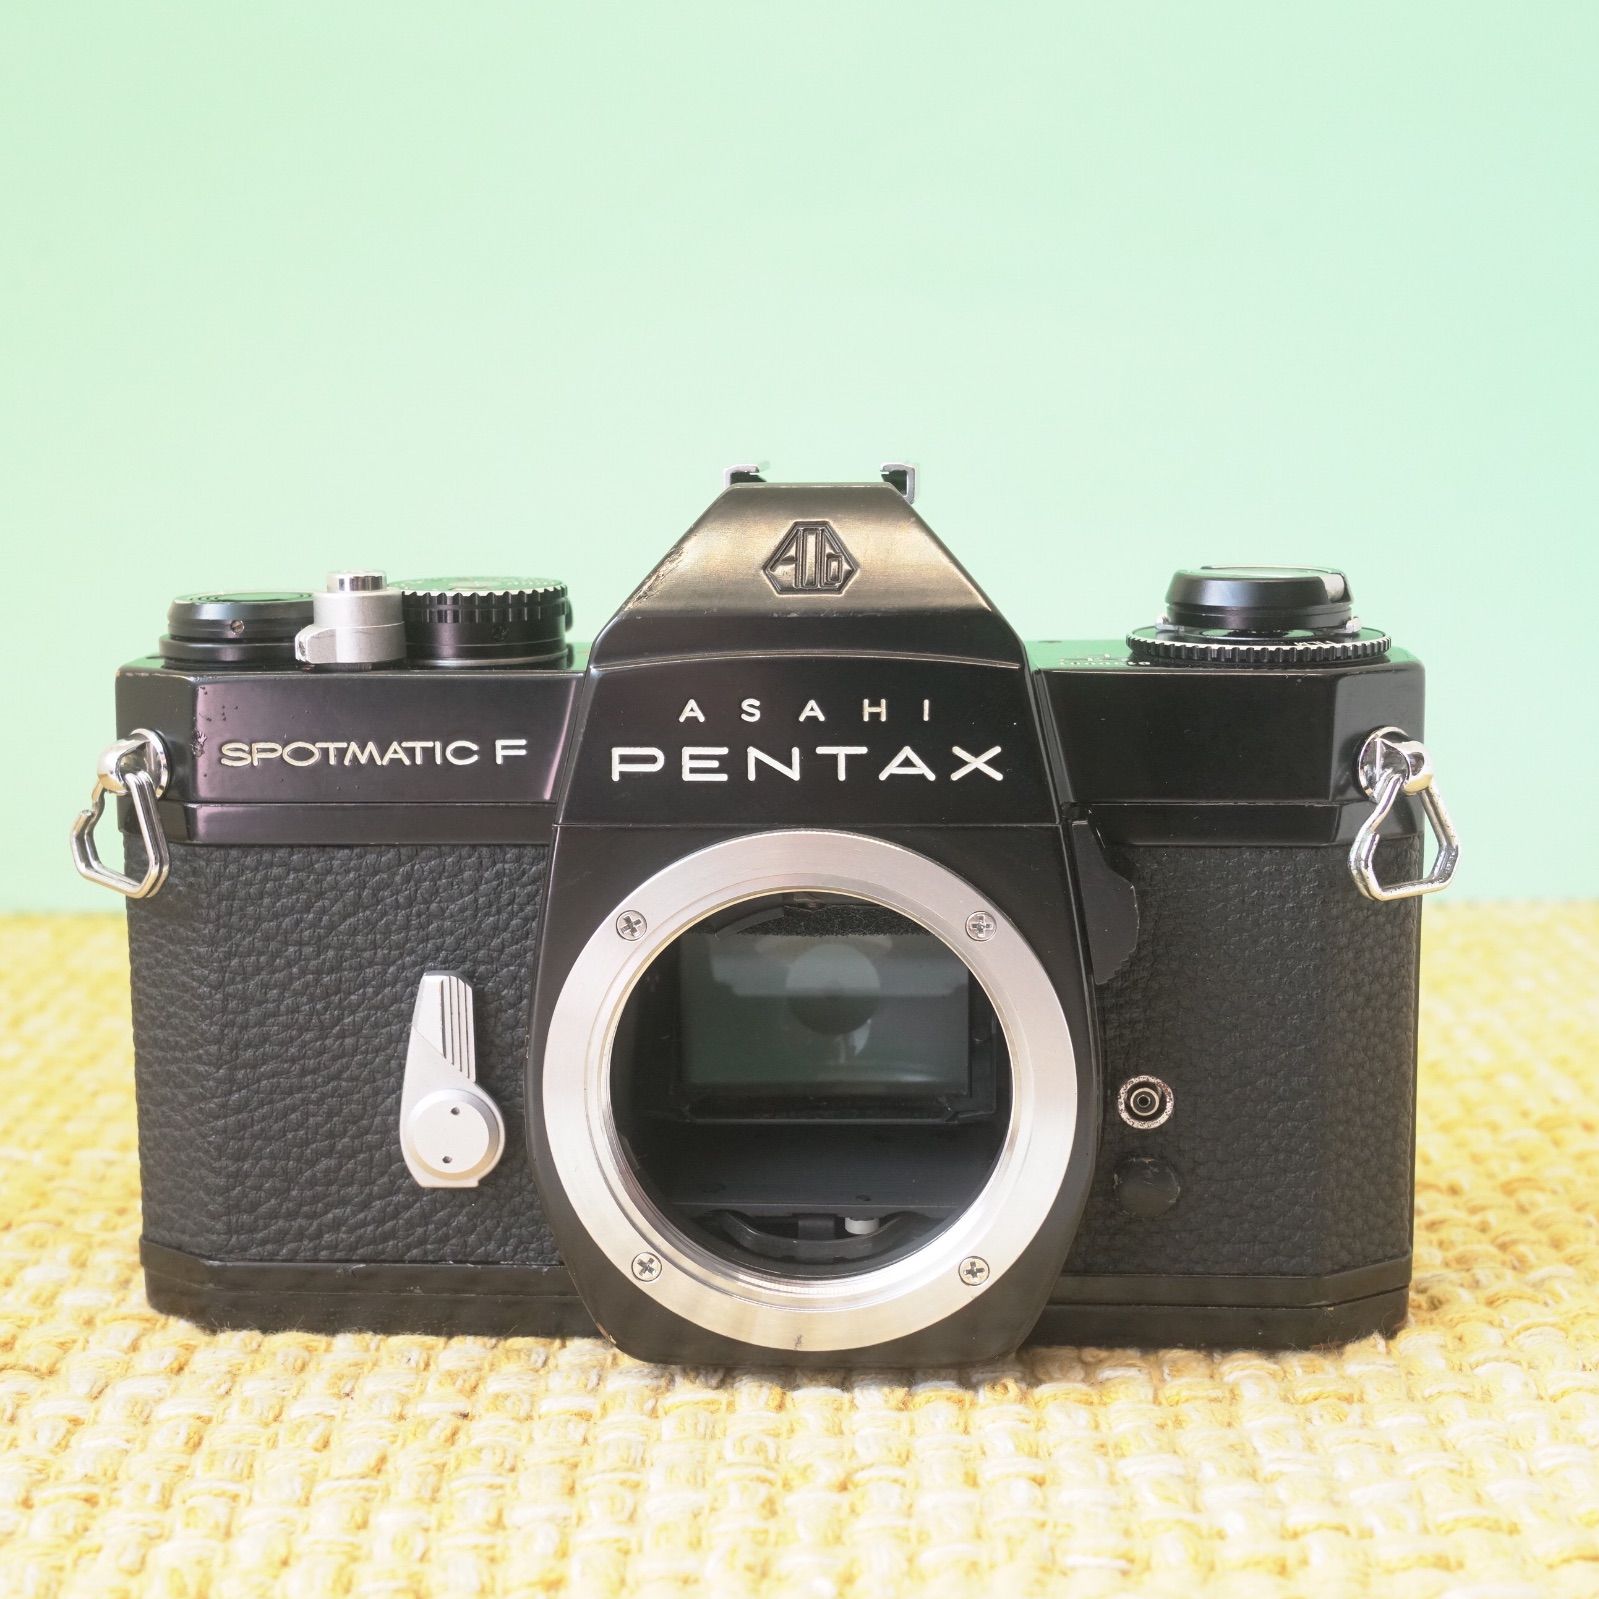 フィルムカメラ 完動品 即撮影可能 Pentax SP f 1.8 L812 最新アイテム 